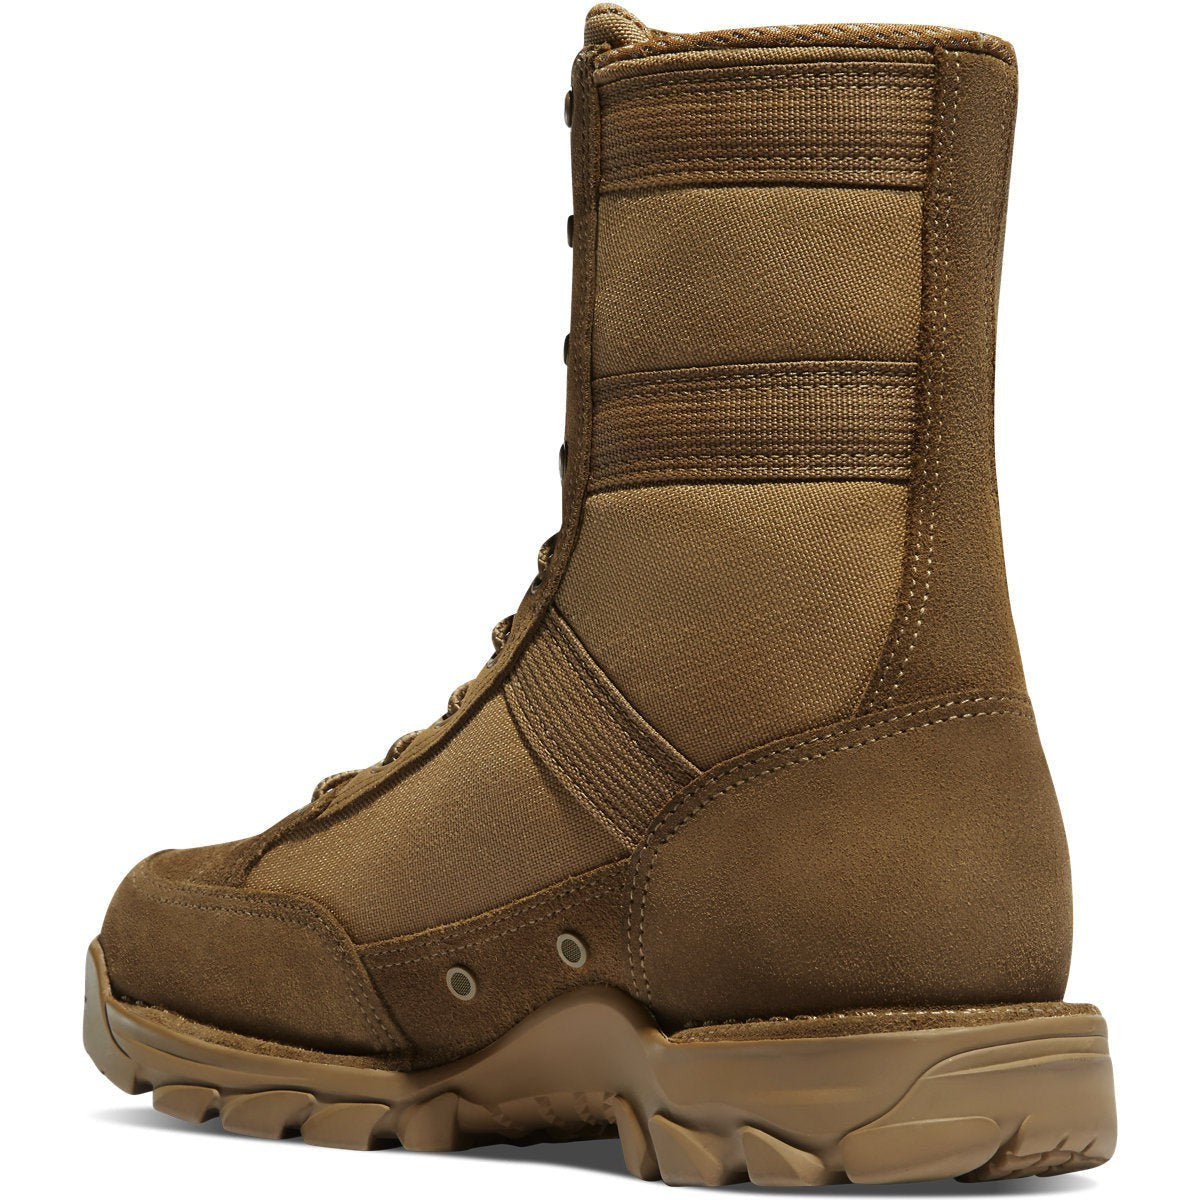 Danner Men's Rivot TFX Comp Toe Military Work Boot -Coyote- 51512  - Overlook Boots